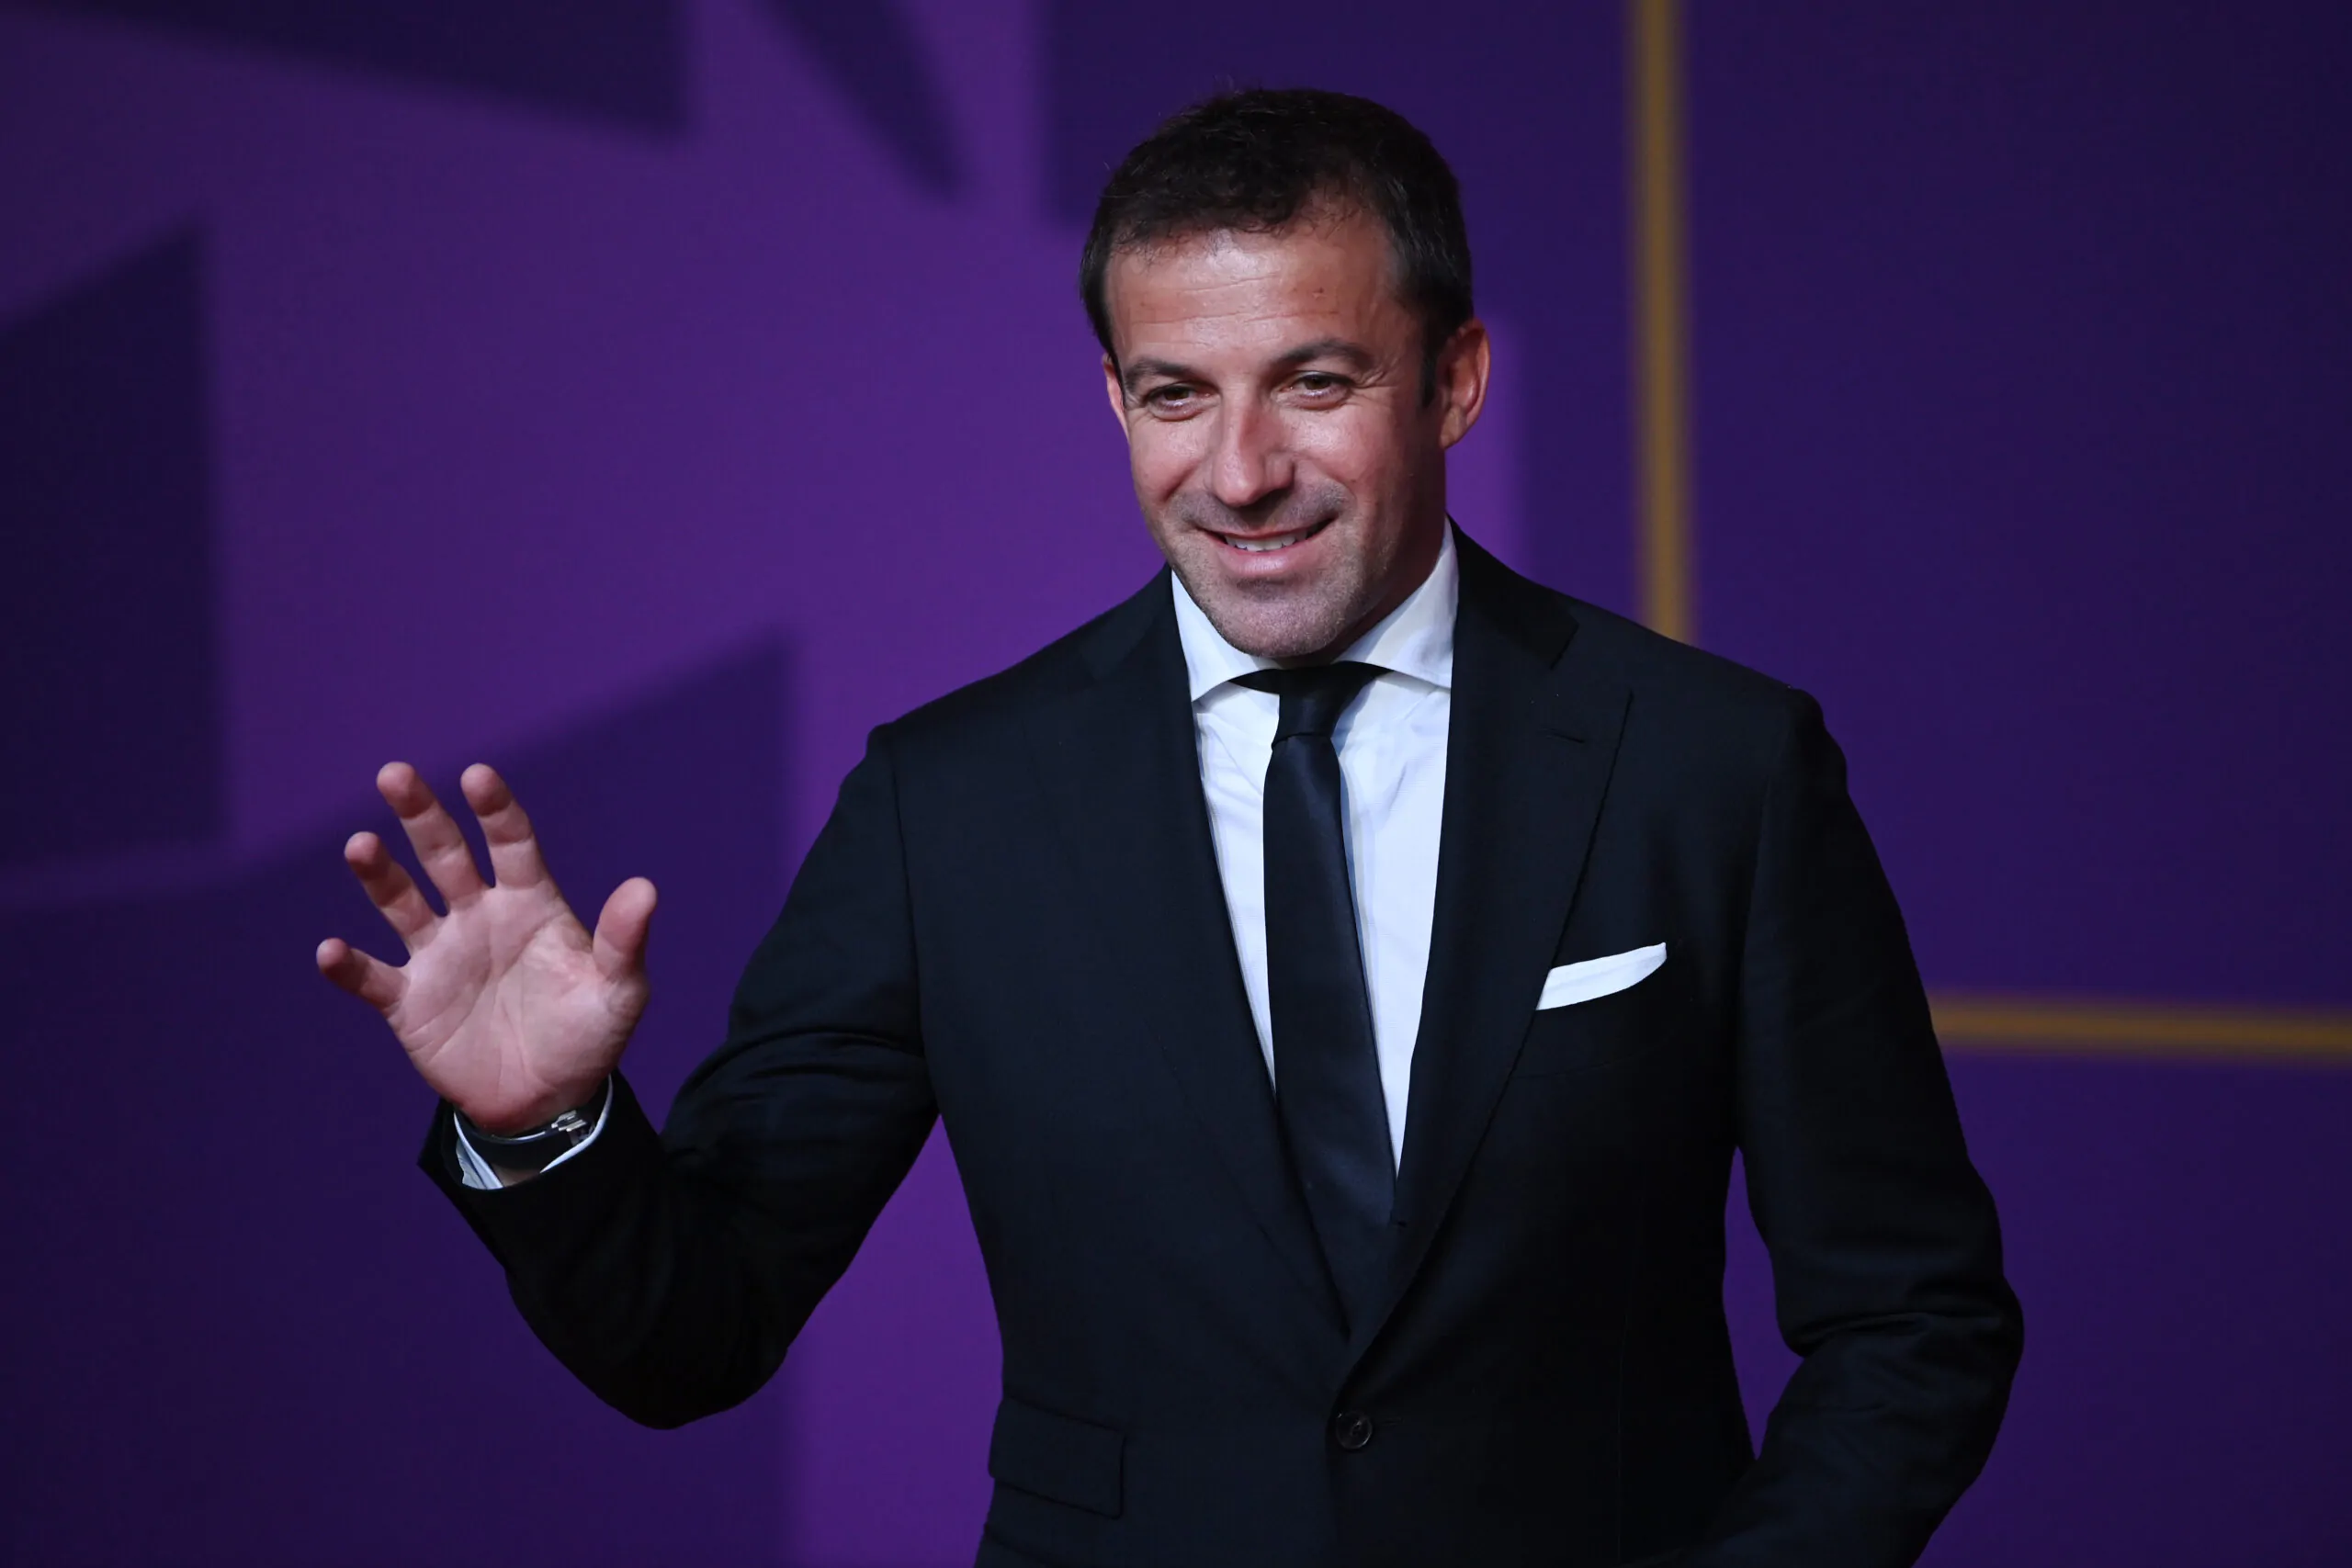 Calciomercato Juve, Del Piero consiglia: “Vi dico chi è il giocatore giusto per assistere Vlahovic”